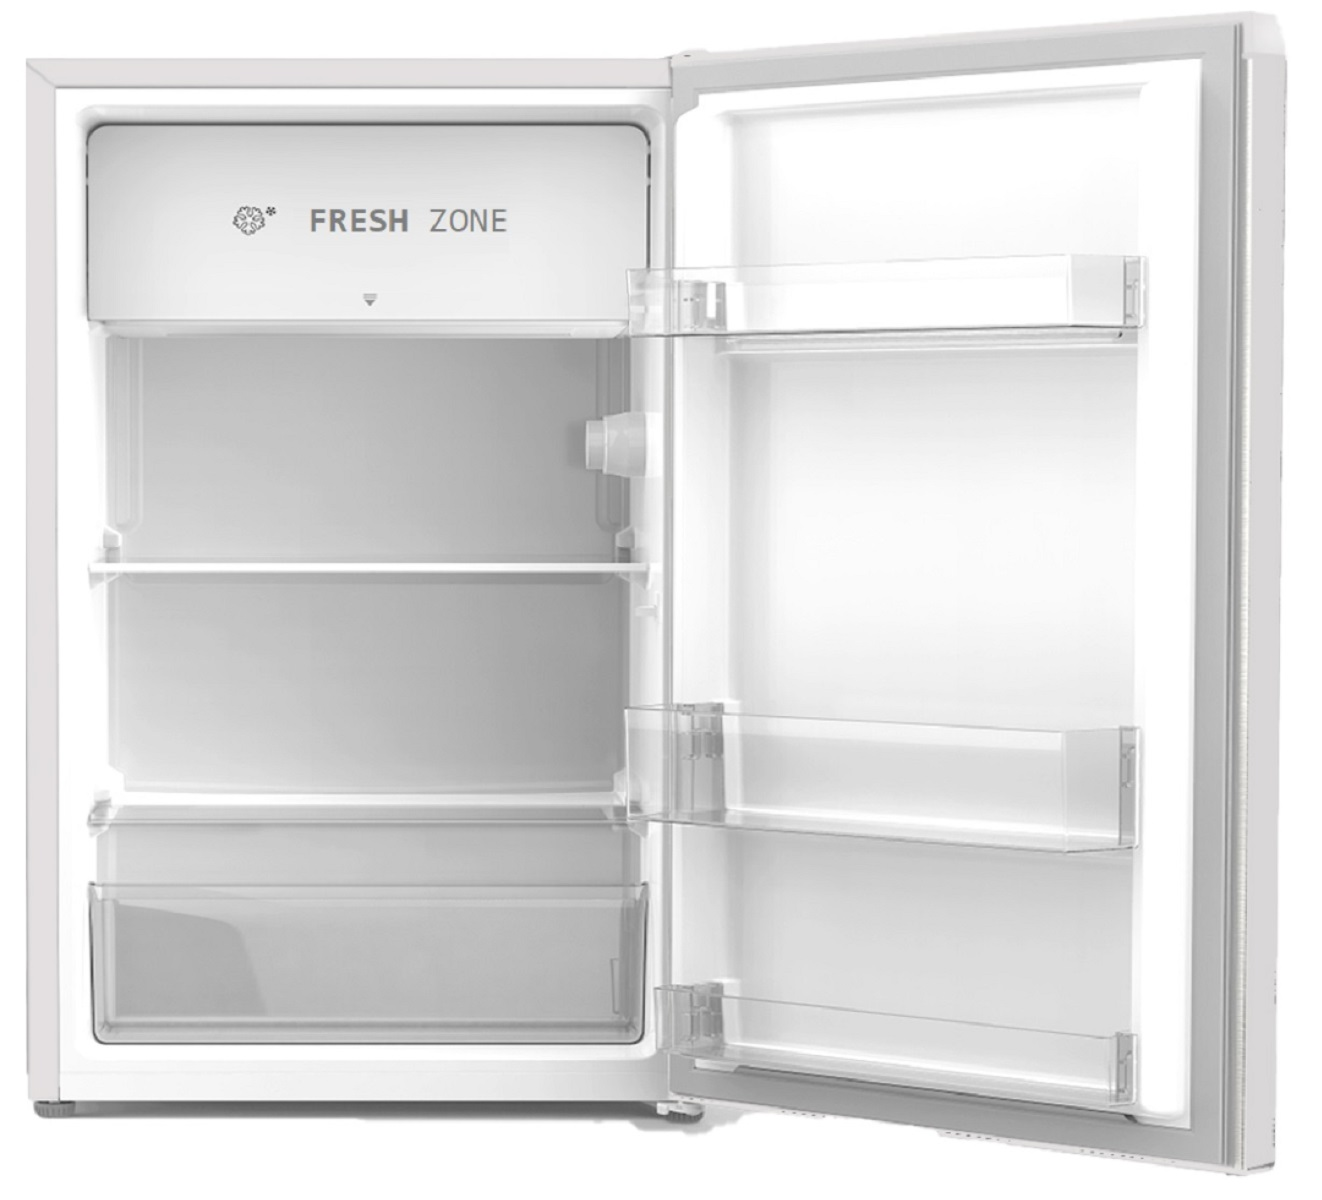 PKM KS93 Kühlschrank Kühlschrank mit hoch, Kaltlagerfach weiß) cm (107 84,2 F, kWh